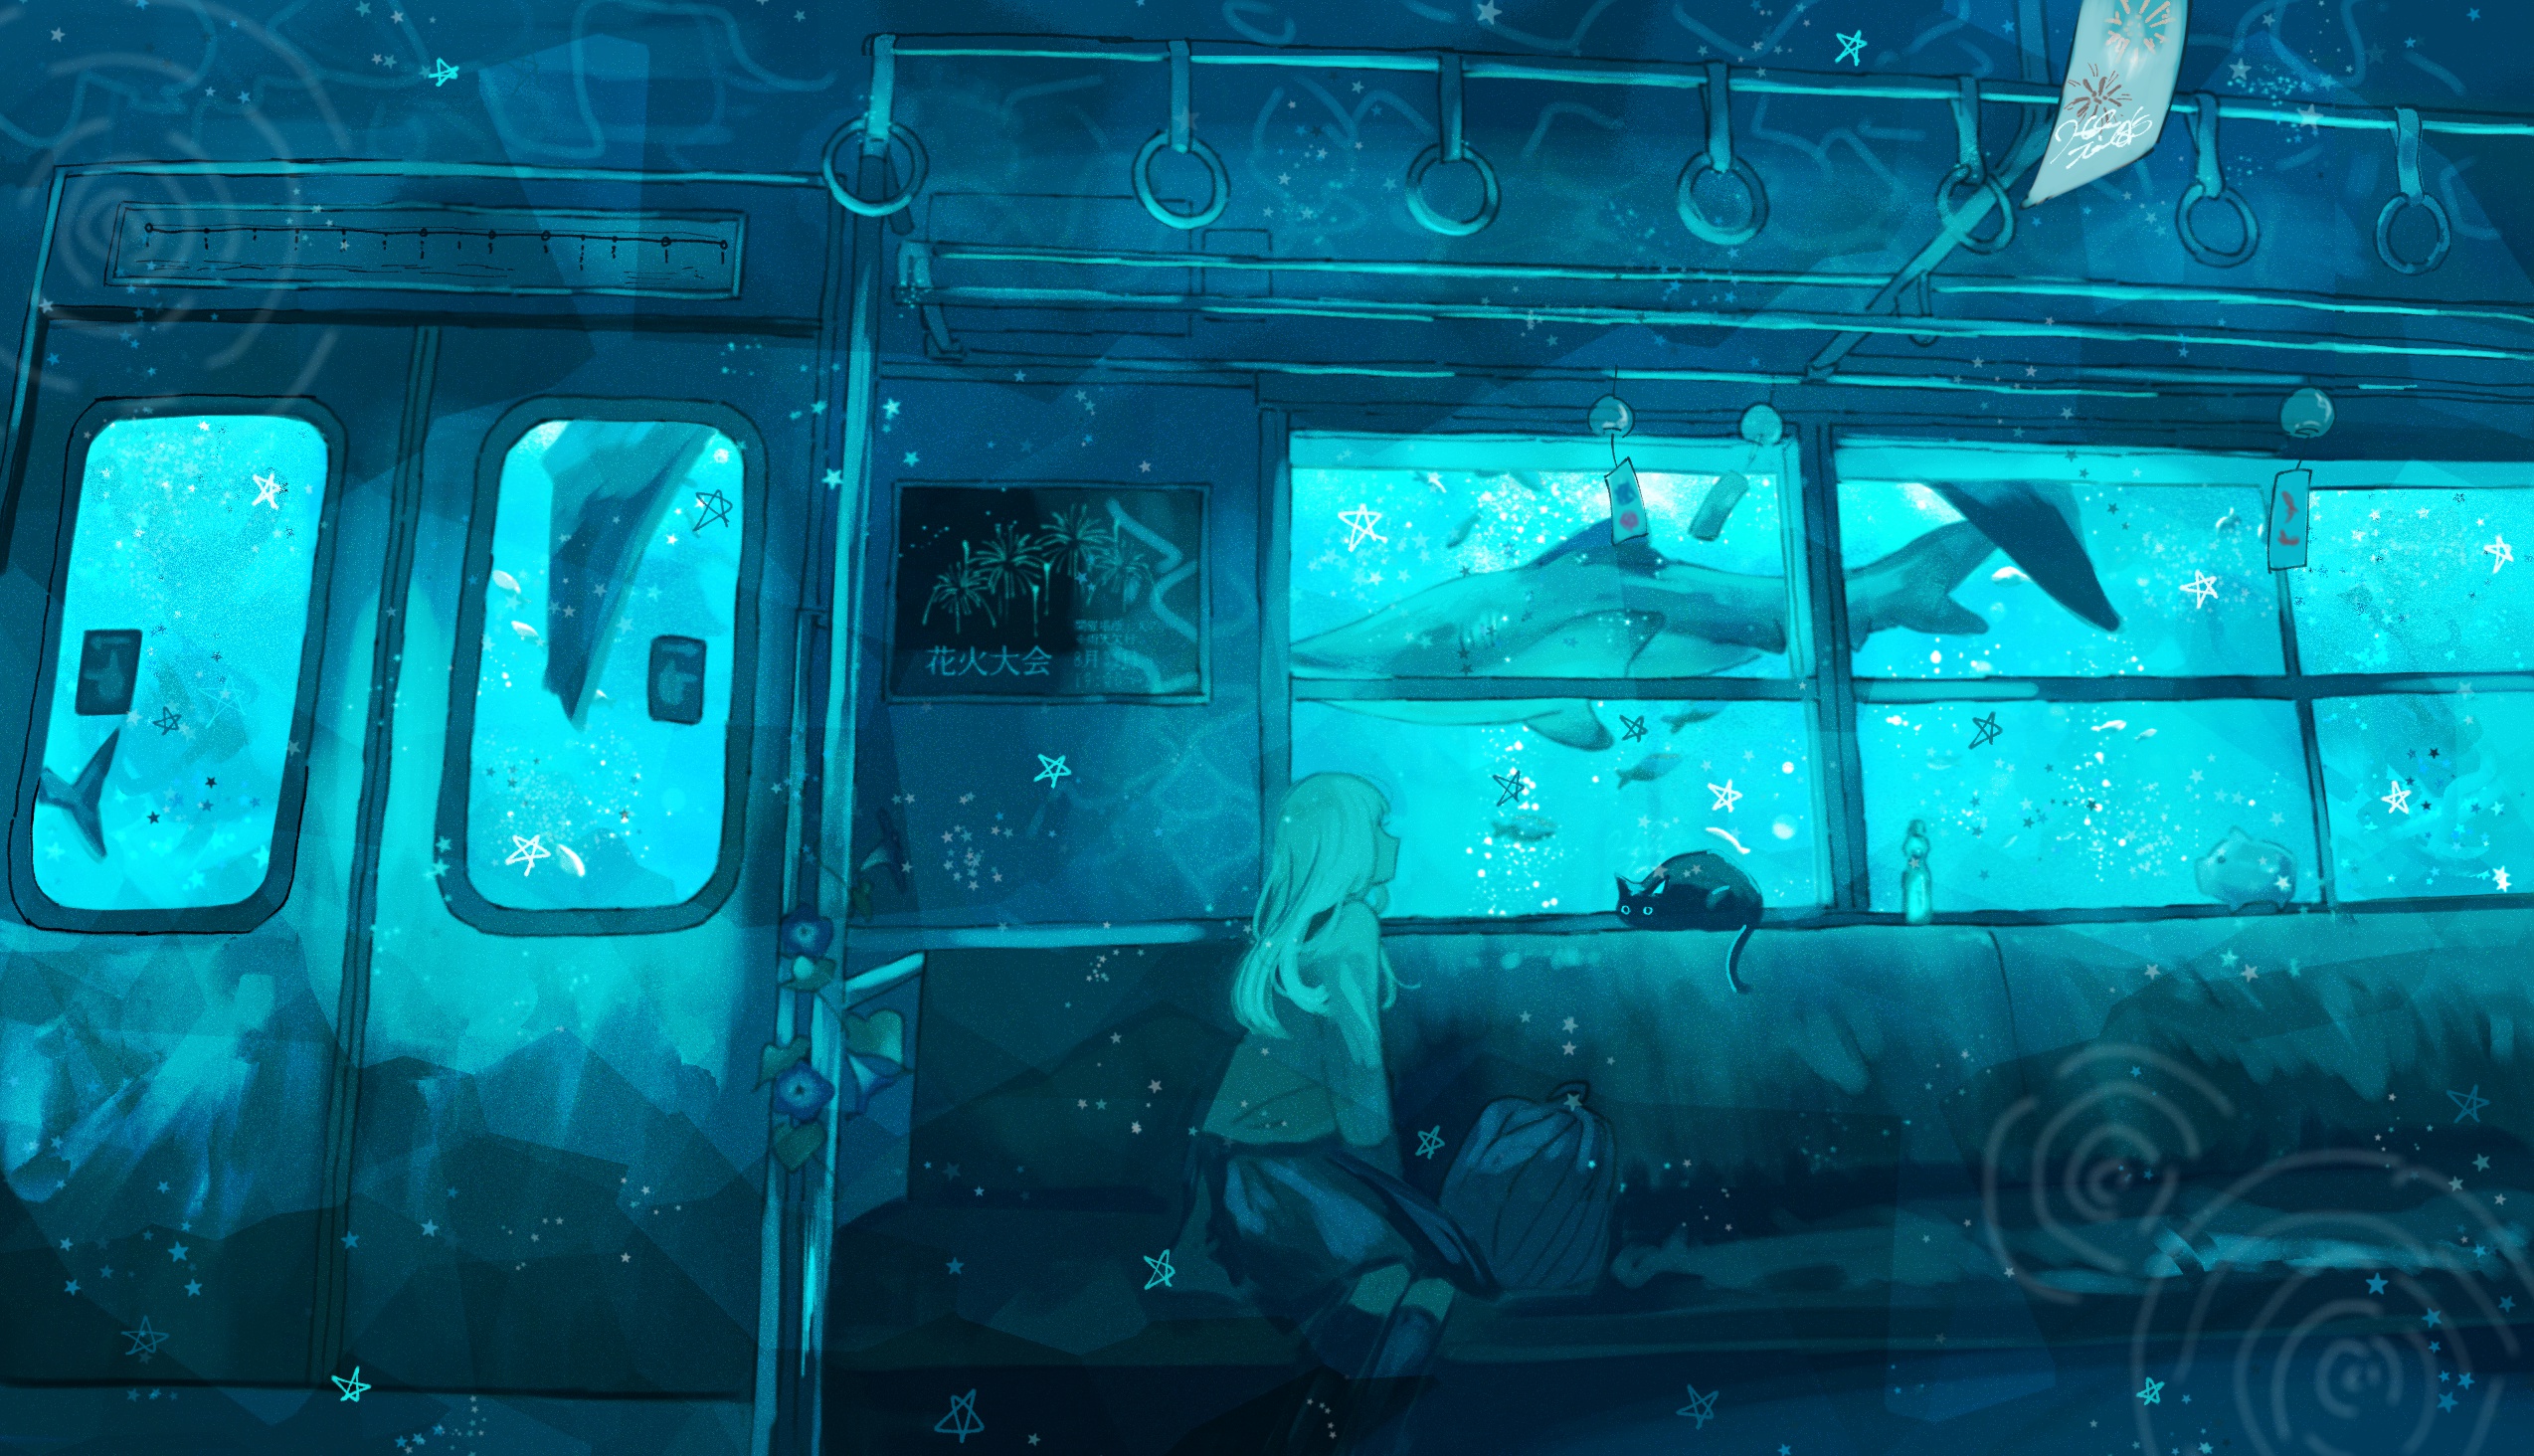 Download mobile wallpaper Anime, Cat, Girl, Train, Underwater, Shark for free.